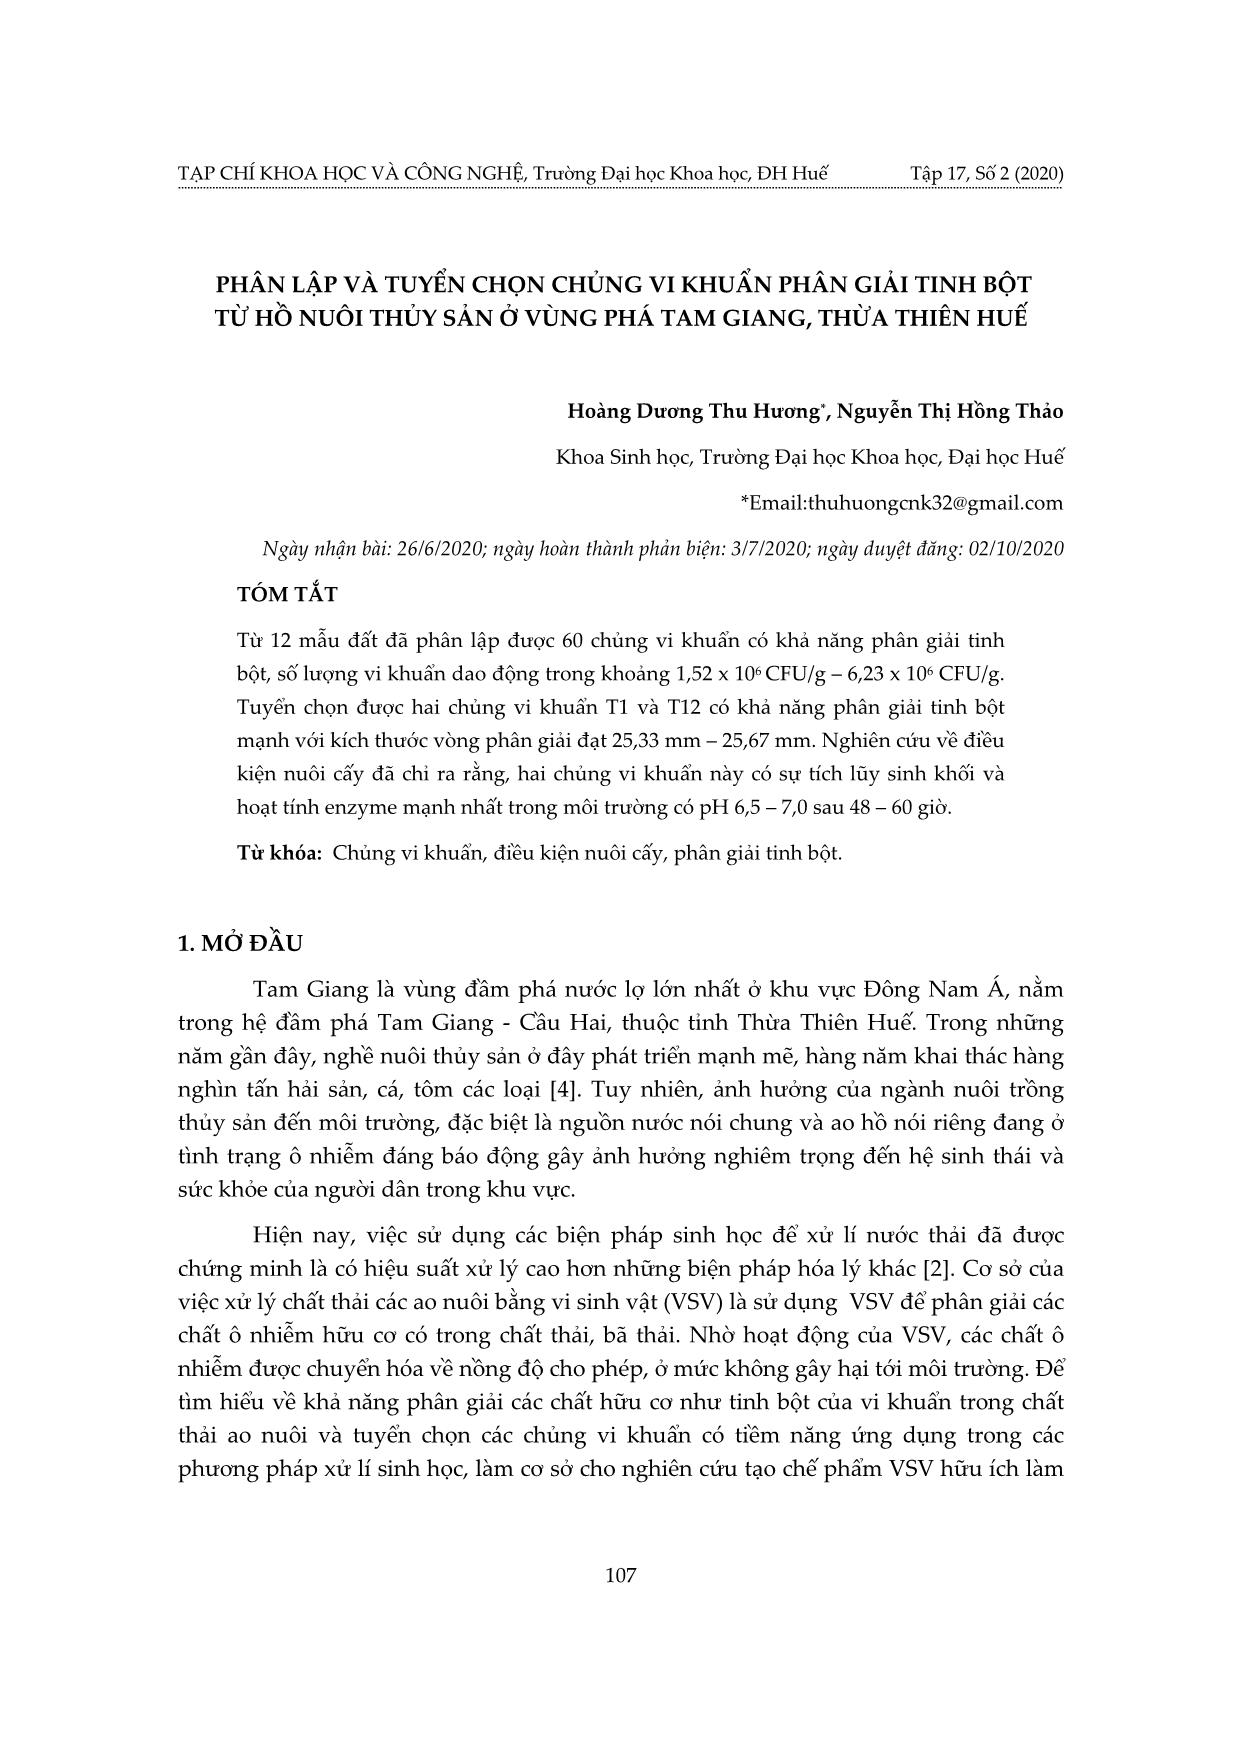 Phân lập và tuyển chọn chủng vi khuẩn phân giải tinh bột từ hồ nuôi thủy sản ở vùng phá Tam giang, Thừa Thiên Huế trang 1